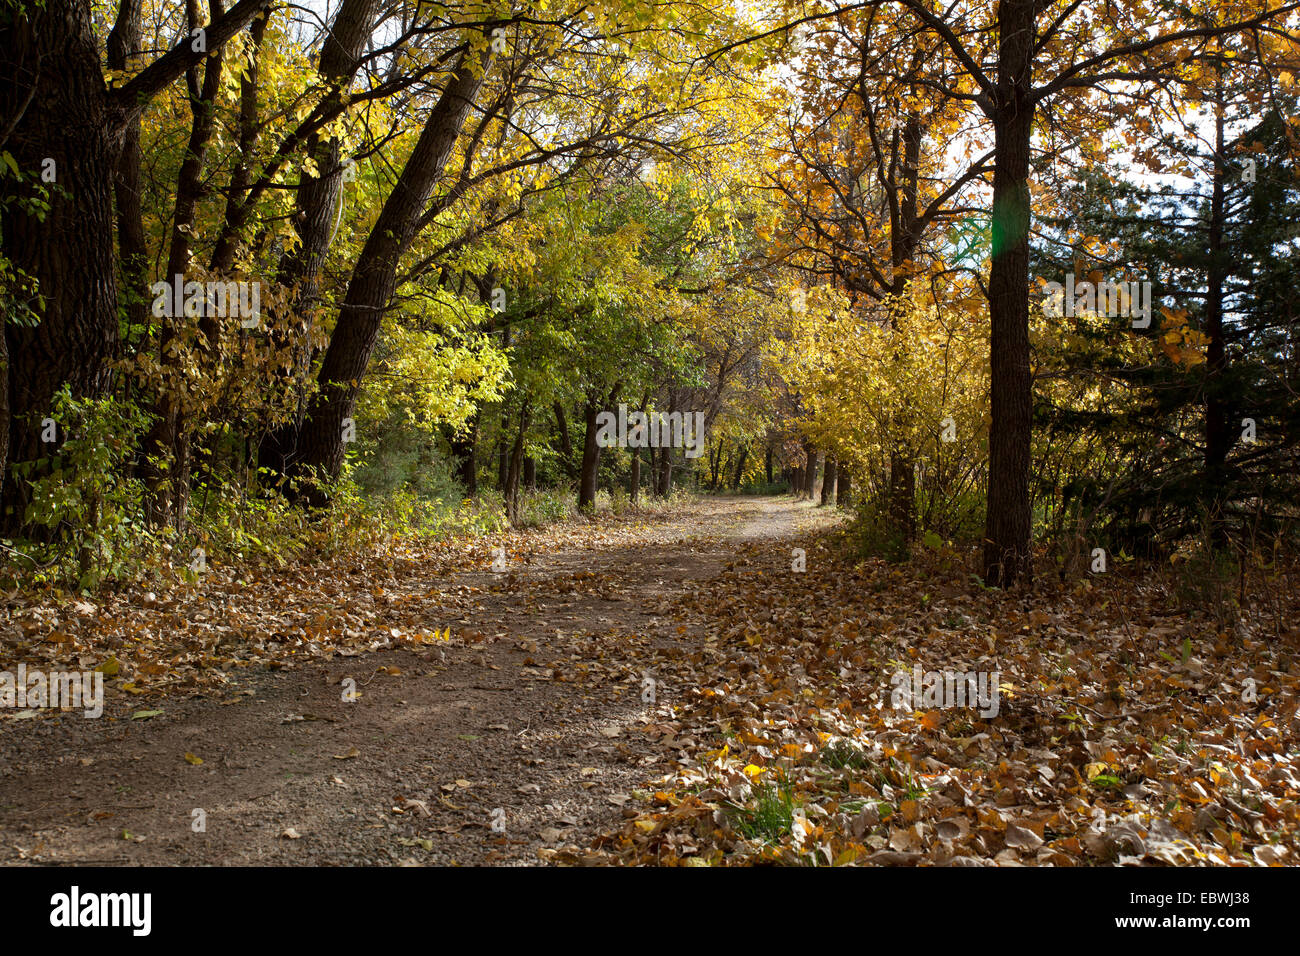 Belle voie bordée d'arbres couverts de feuilles d'automne Banque D'Images